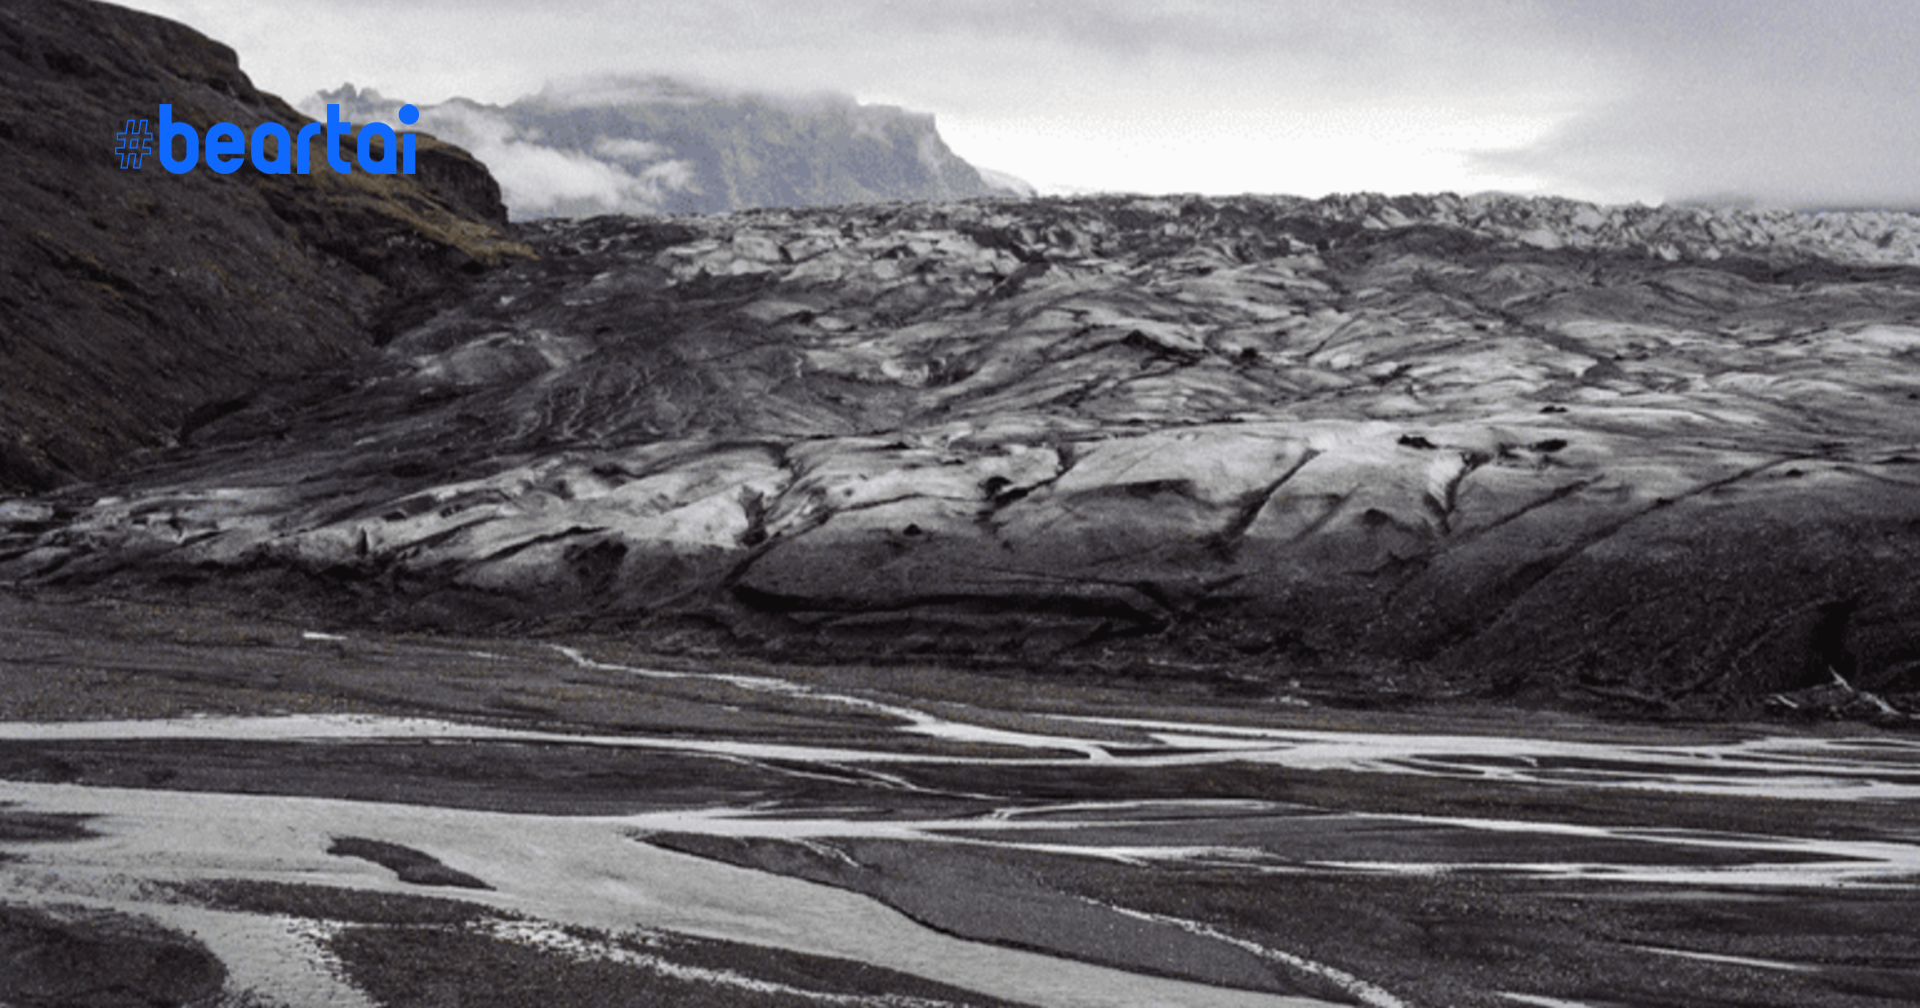 โลกร้อนทำพิษ! เปิดภาพเปรียบเทียบธารน้ำแข็งที่หายไปของไอซ์แลนด์